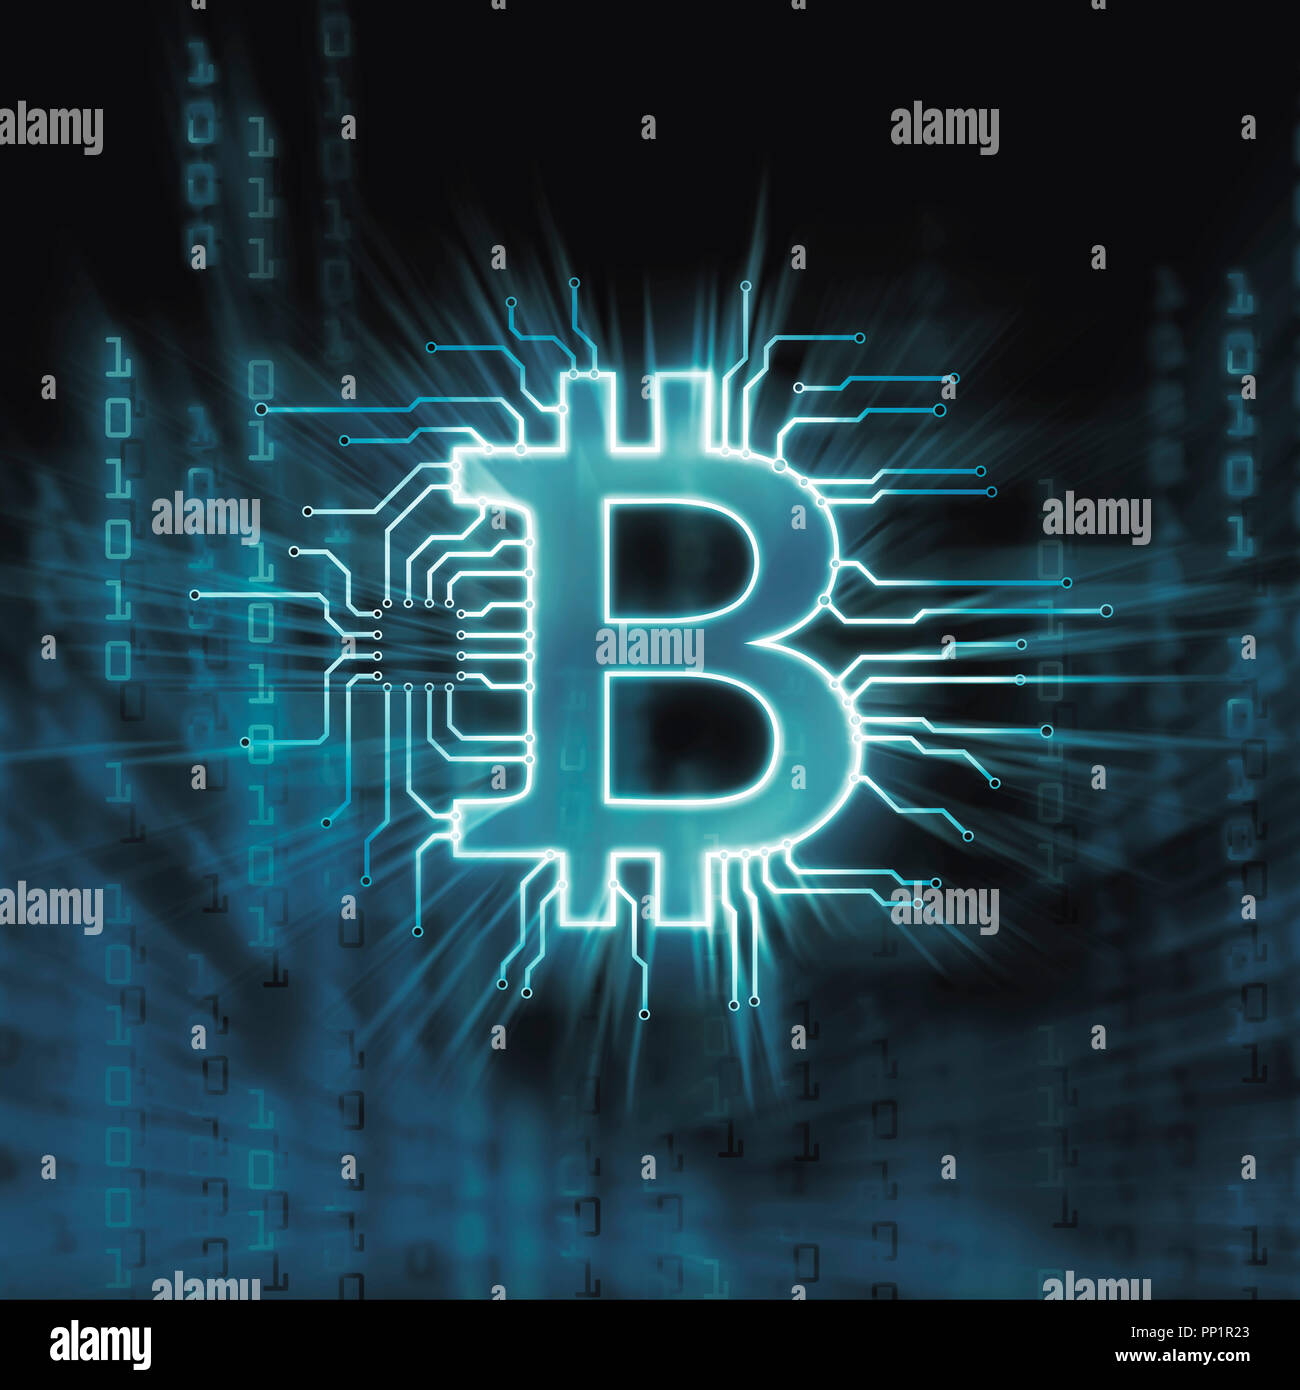 Bitcoin ₿ cryptocurrency, digitale dezentrale Währungssymbol, konzeptionelle Darstellung eines Bitcoin zu einem blockchain Netzwerk verbunden. Stockfoto